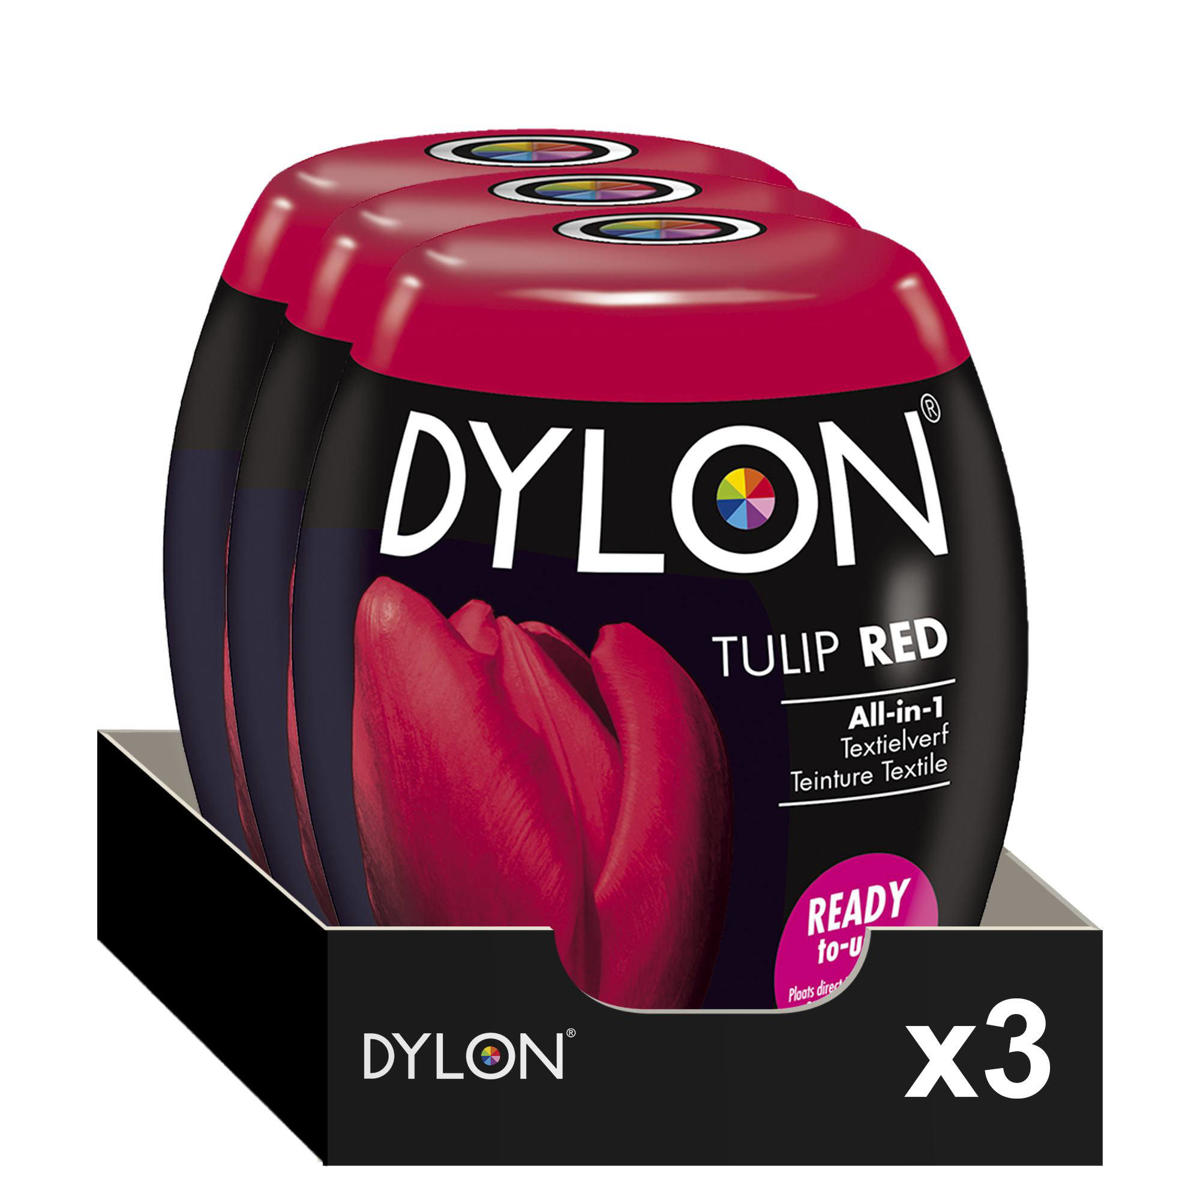 Verleden Pijl Namaak Dylon Pod - Tulip Red textielverf - 3 pods (3x350g) | wehkamp